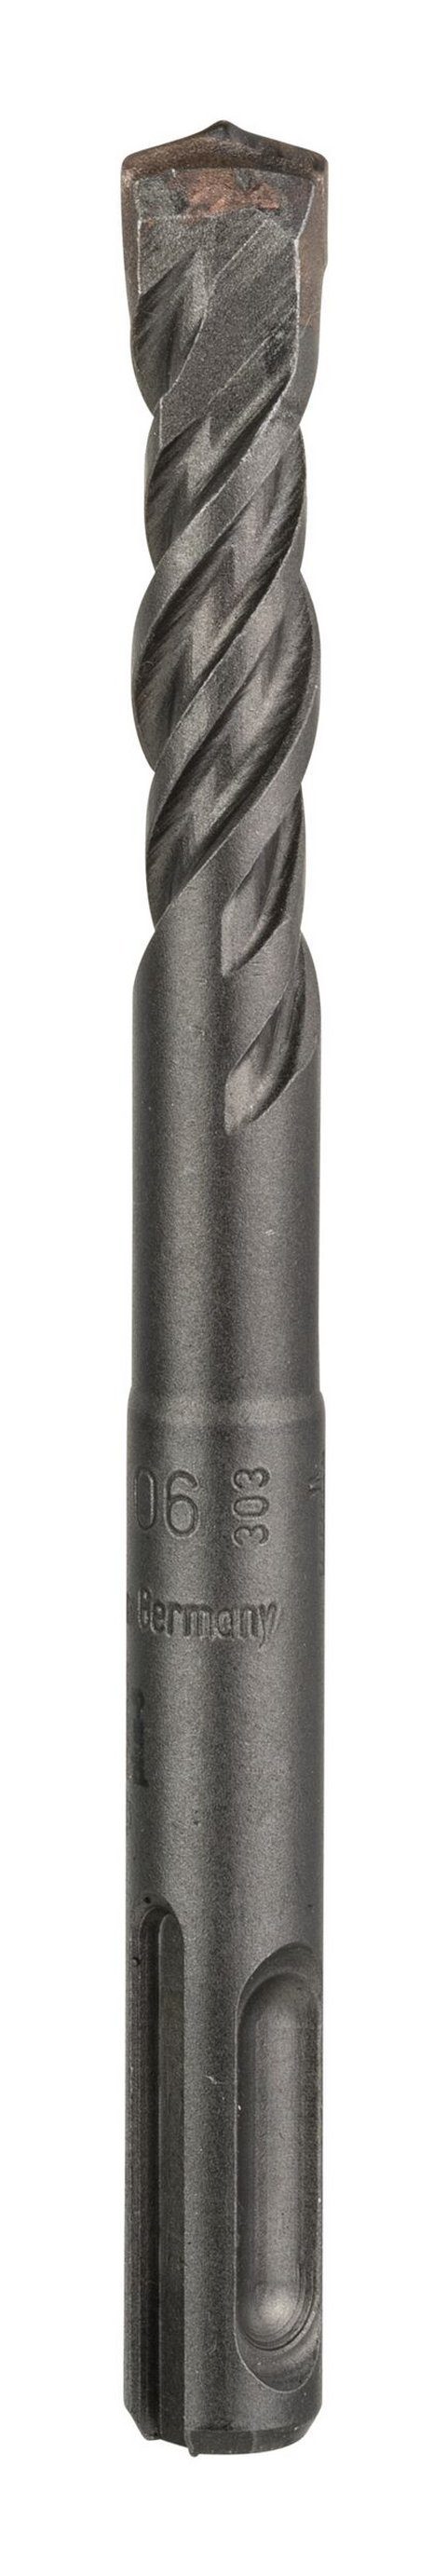 BOSCH Universalbohrer, SDS plus-5 Hammerbohrer - 10 x 50 x 115 mm - 1er-Pack